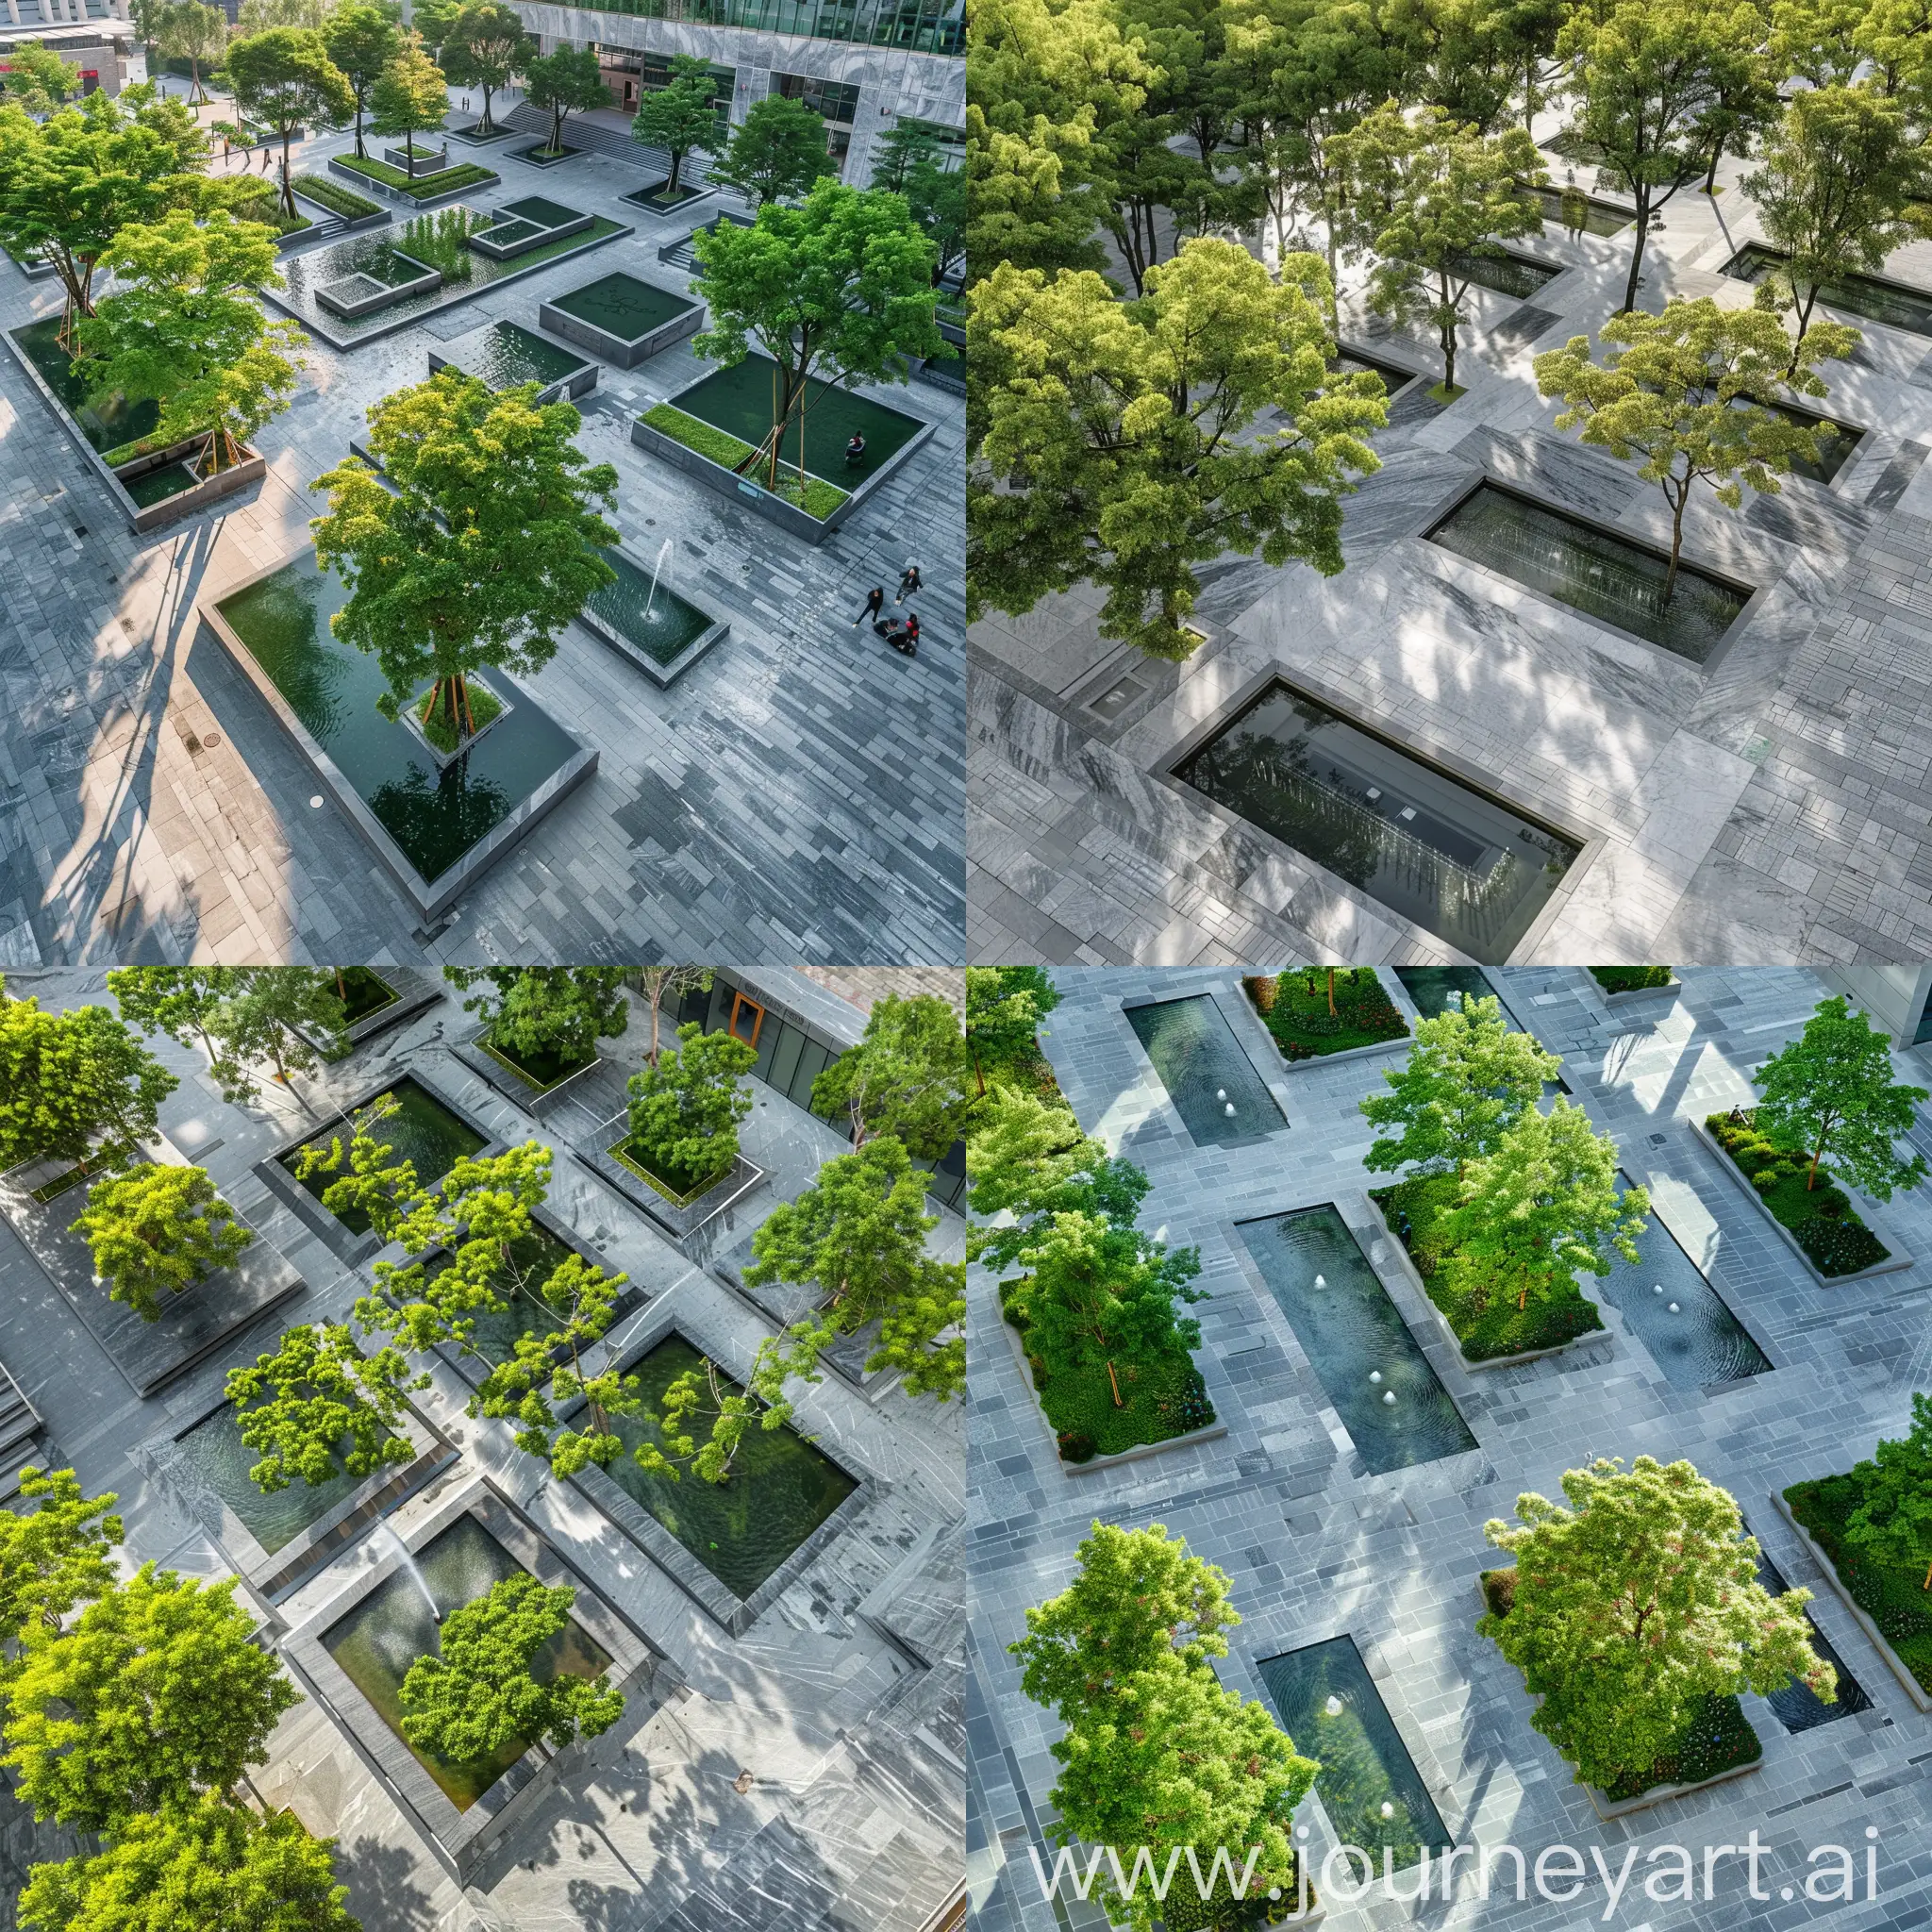 Городская площадь Площадь с зелеными деревьями серые мраморные небольшие прямоугольные бассейны и в них фонтаны